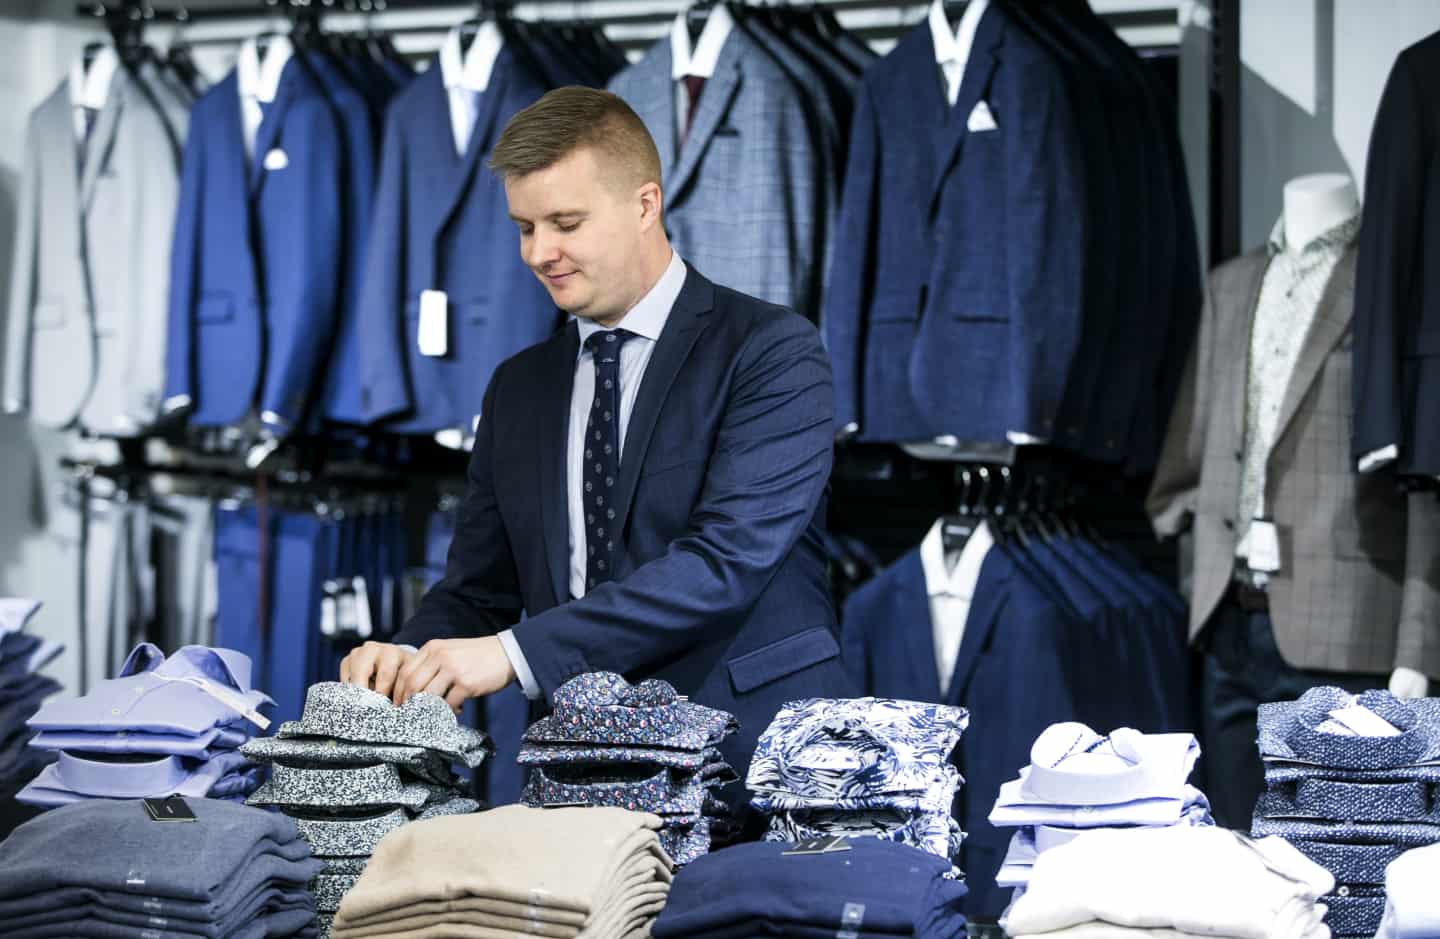 Jonas Pedersen bror fejrer ti år med tøjbutik i Grindsted | jv.dk